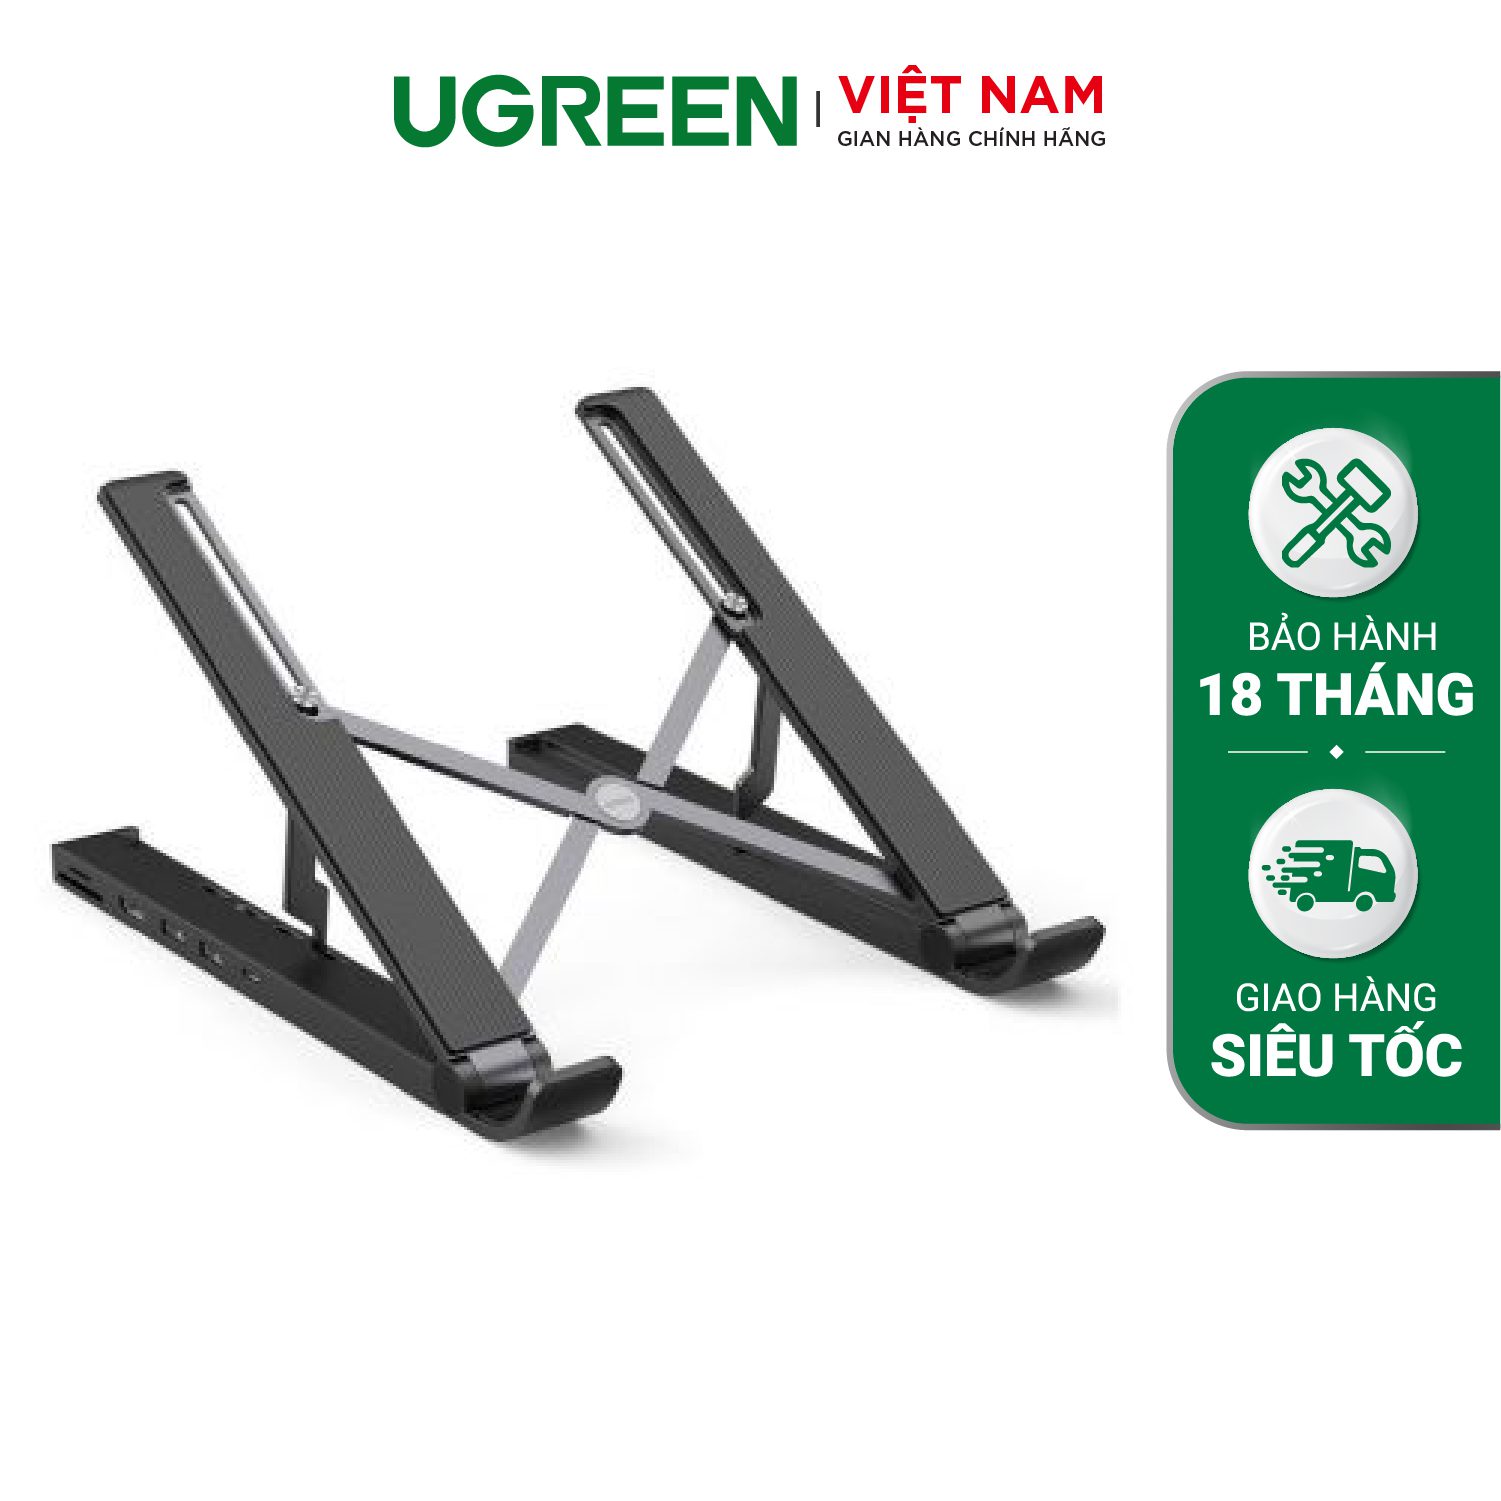 Giá đỡ laptop Ugreen tích hợp HUB chia cổng HDMI 4K, thẻ SD/TF, USB3.0, USB-C – Ugreen Việt Nam 80551